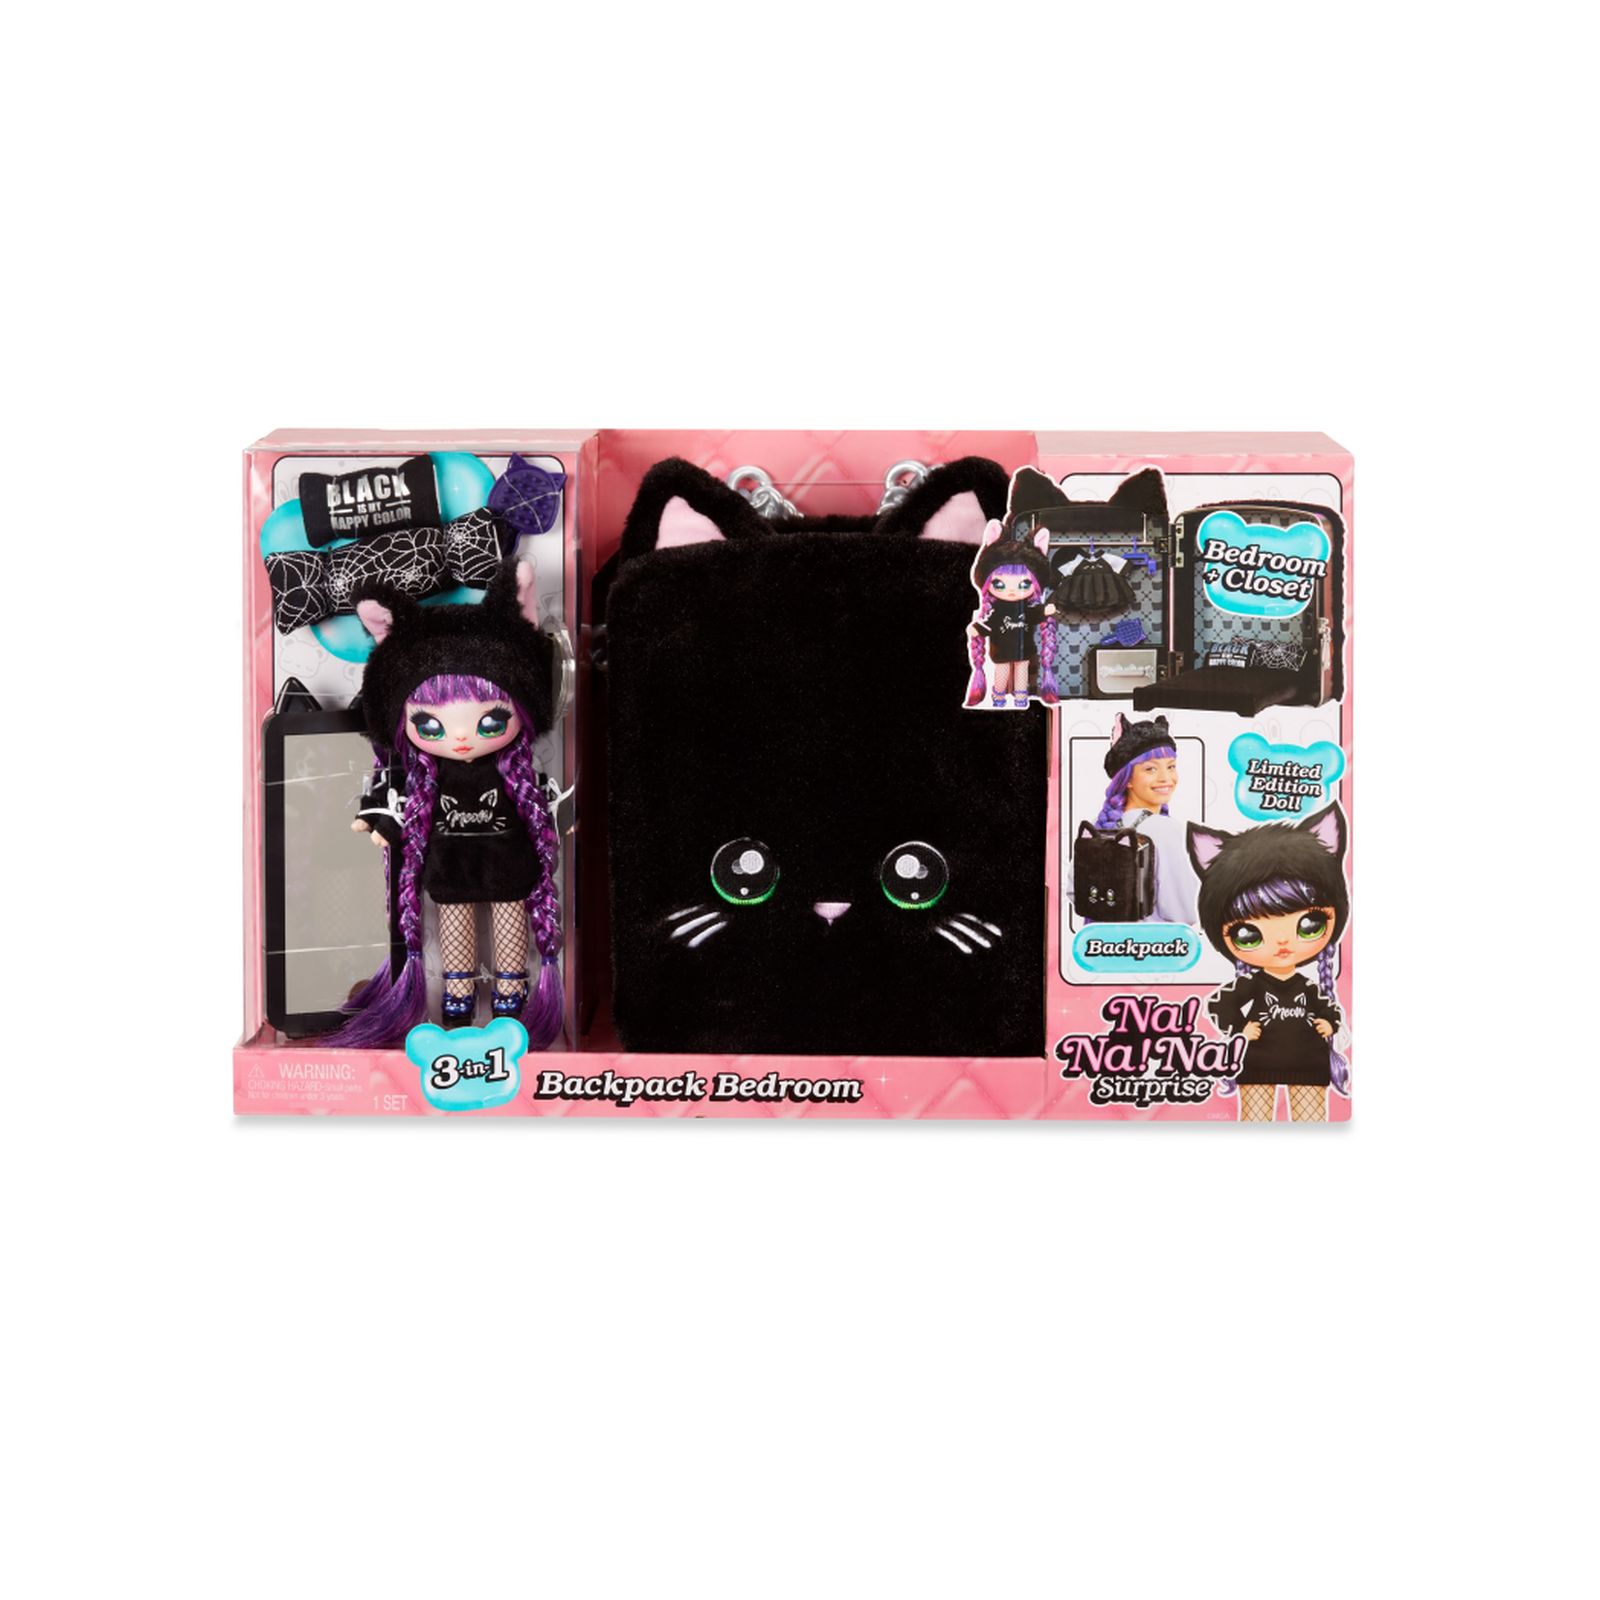 Na! na! na! surprise 3-in-1 backpack bedroom playset - black kitty - NA! NA! NA! SURPRISE